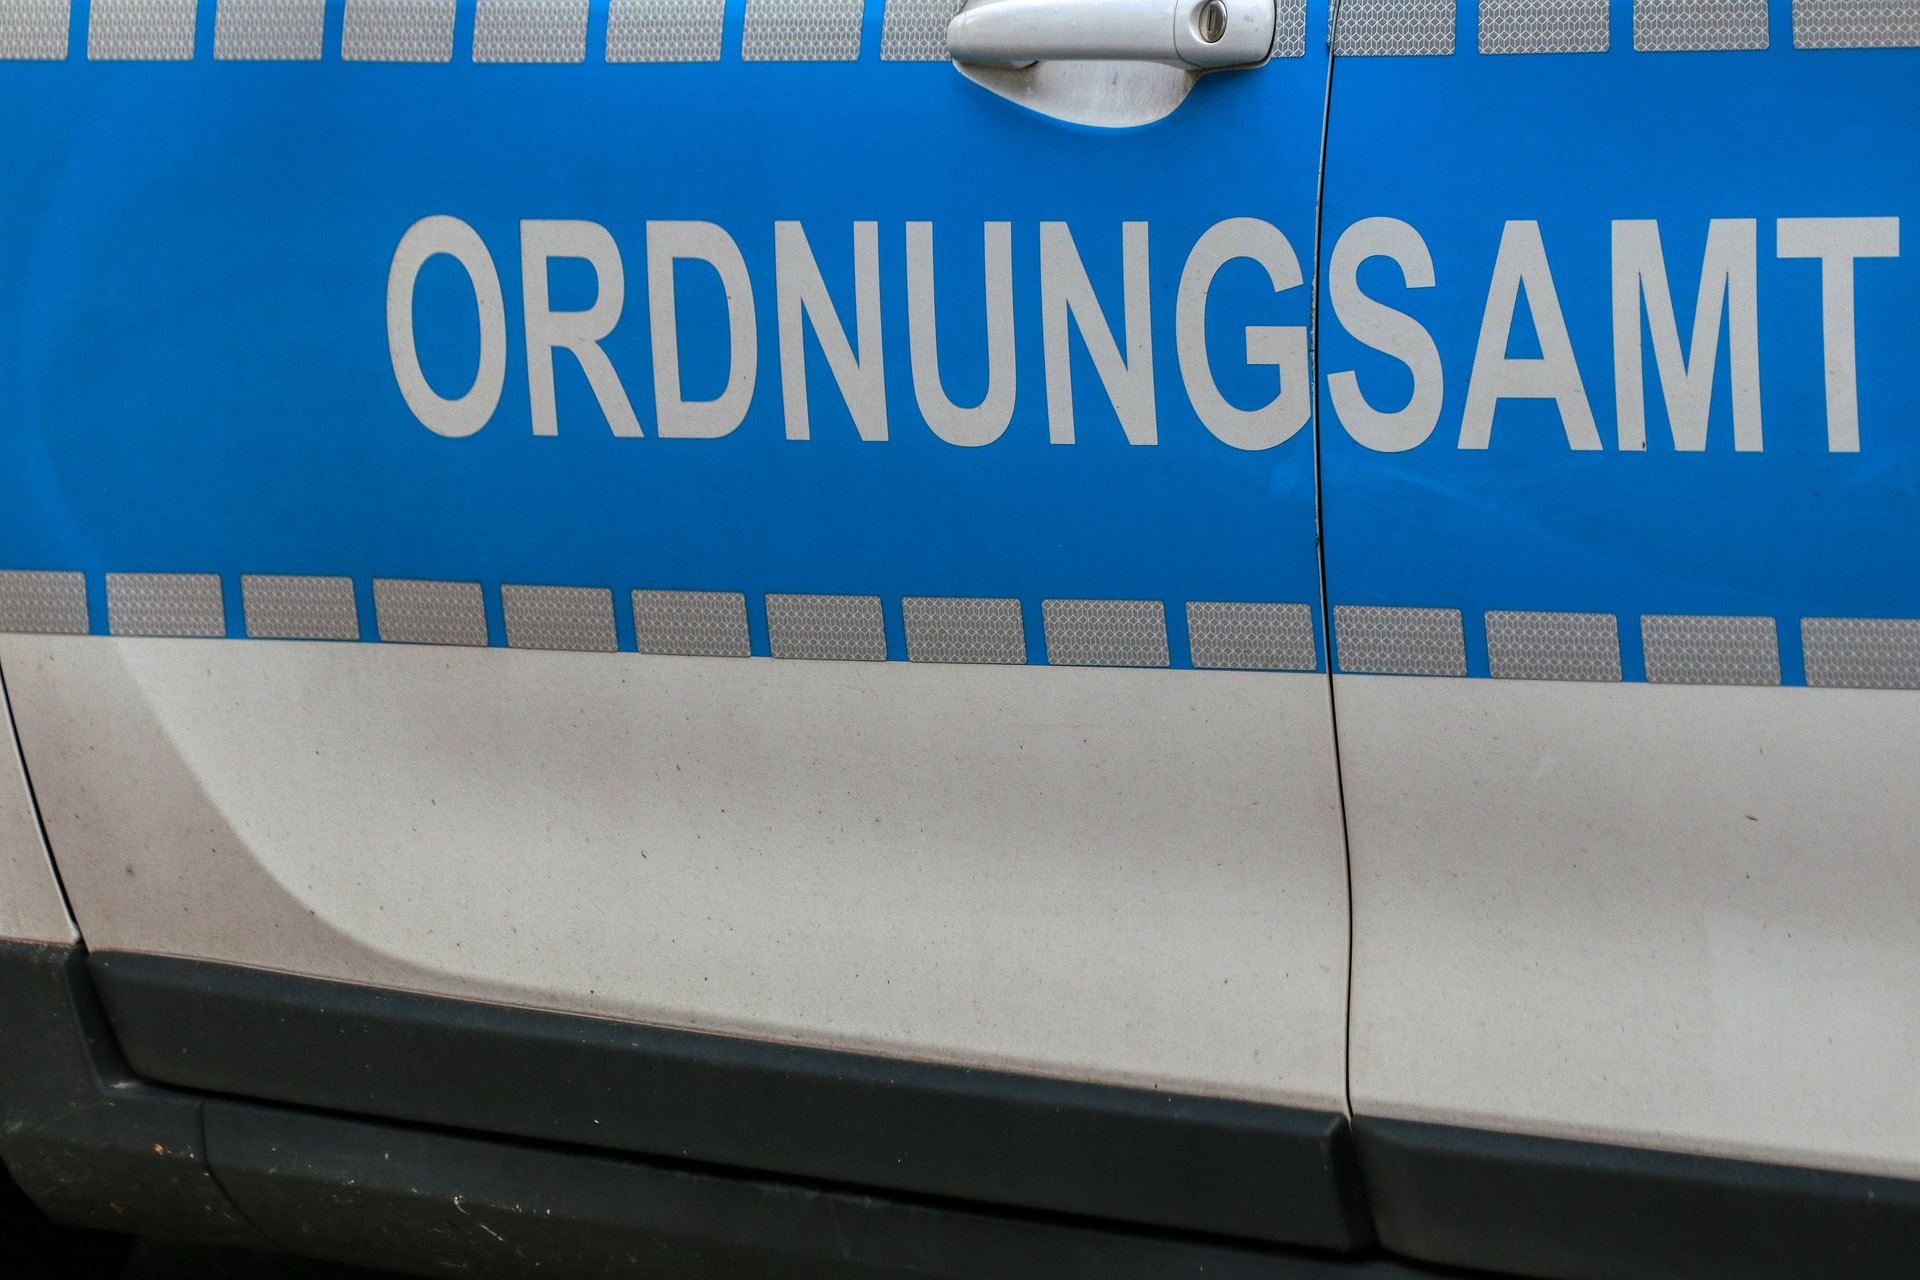 Seitenansicht der Aufschrift "Ordnungsamt" auf einem blauweißen Kraftfahrzeug eines Ordnungsamts